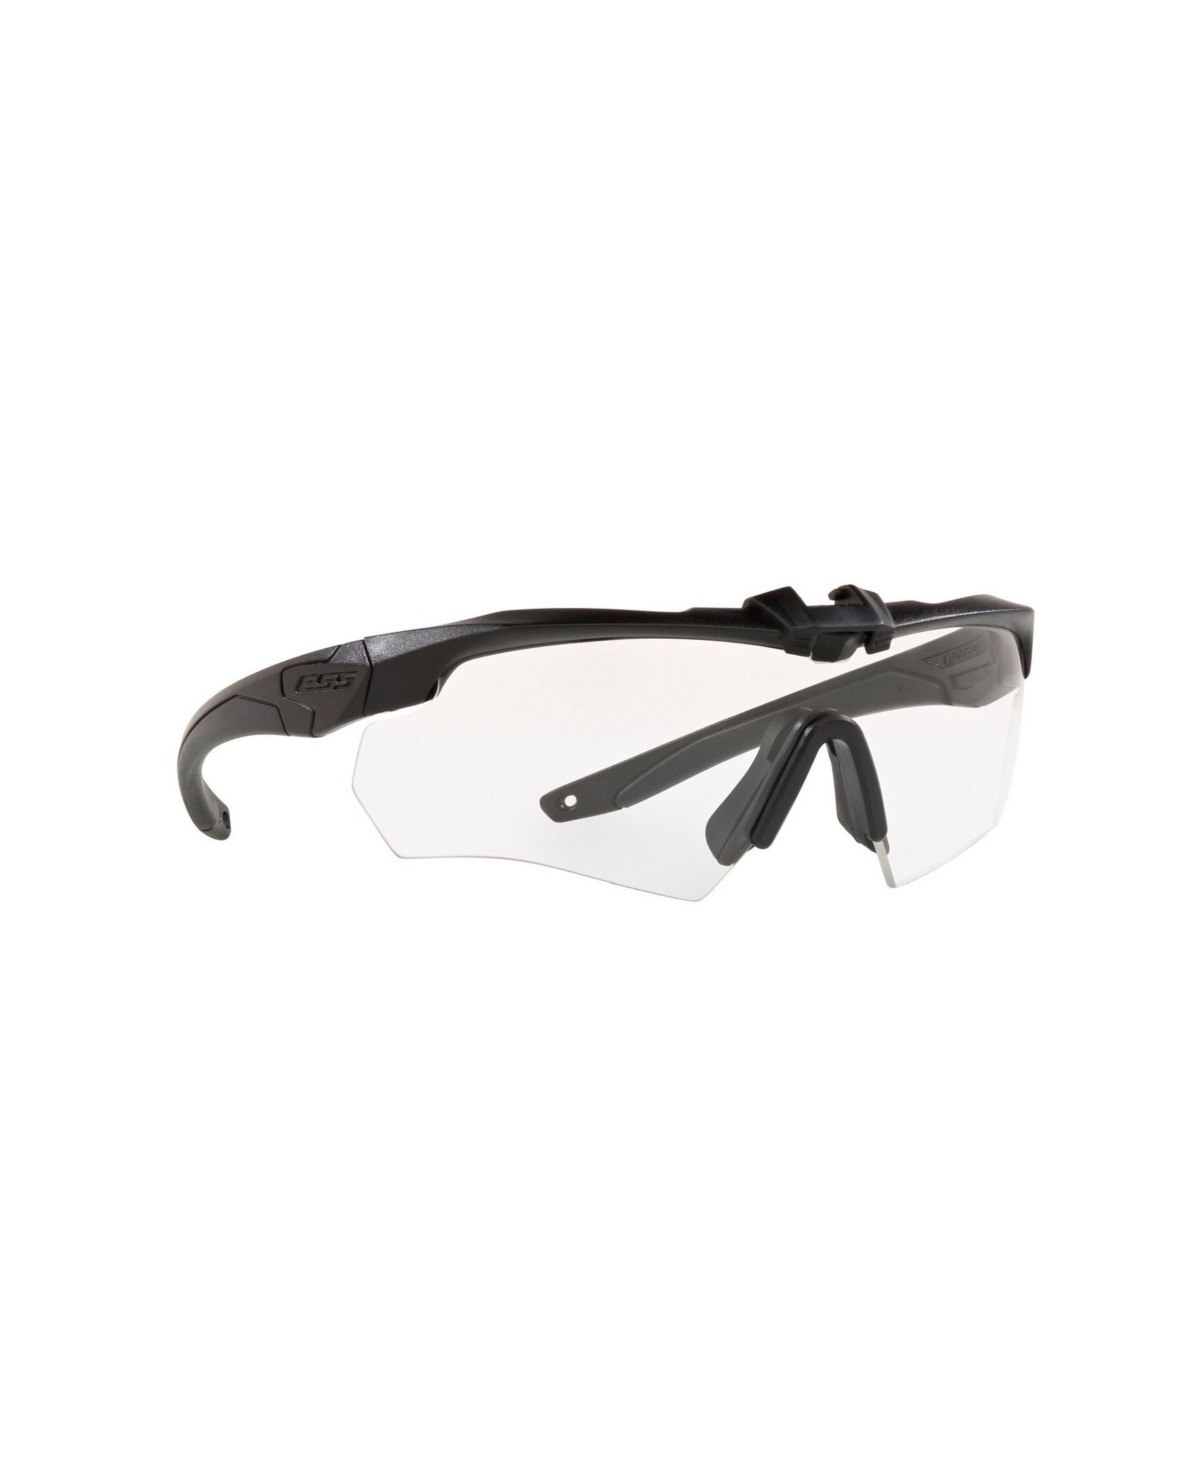 Ppe Safety Glasses, EE9007-1440 - Black